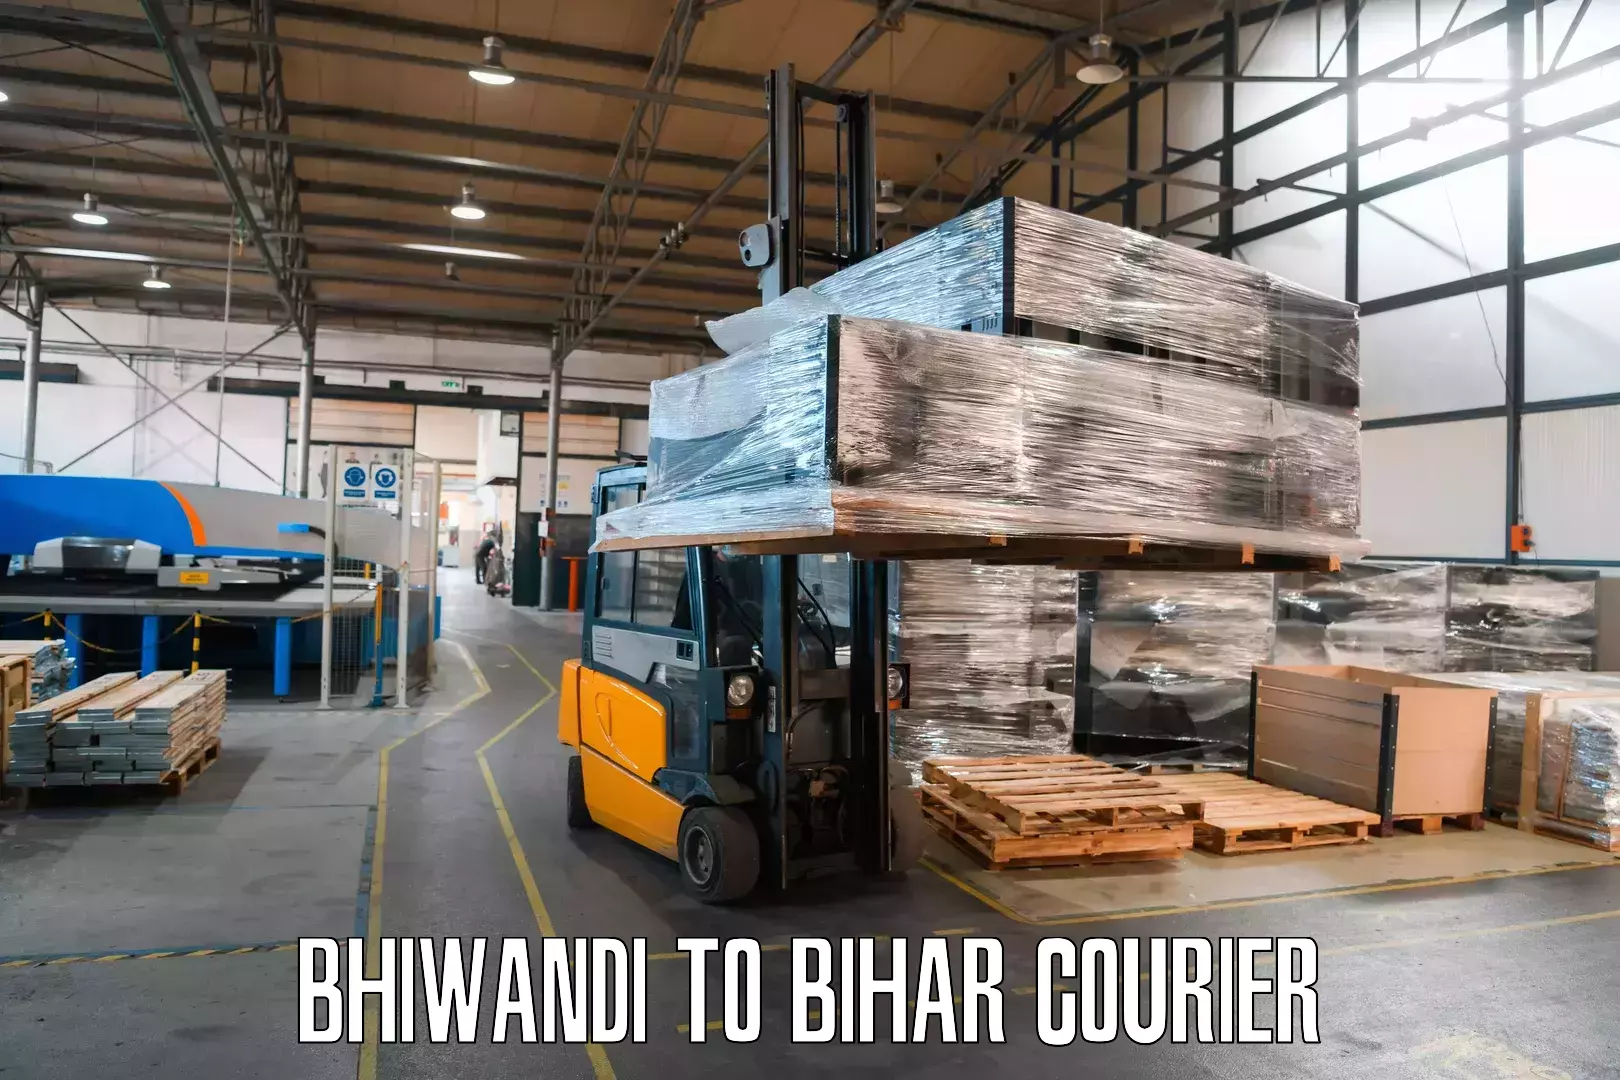 Customer-centric shipping in Bhiwandi to Bihar